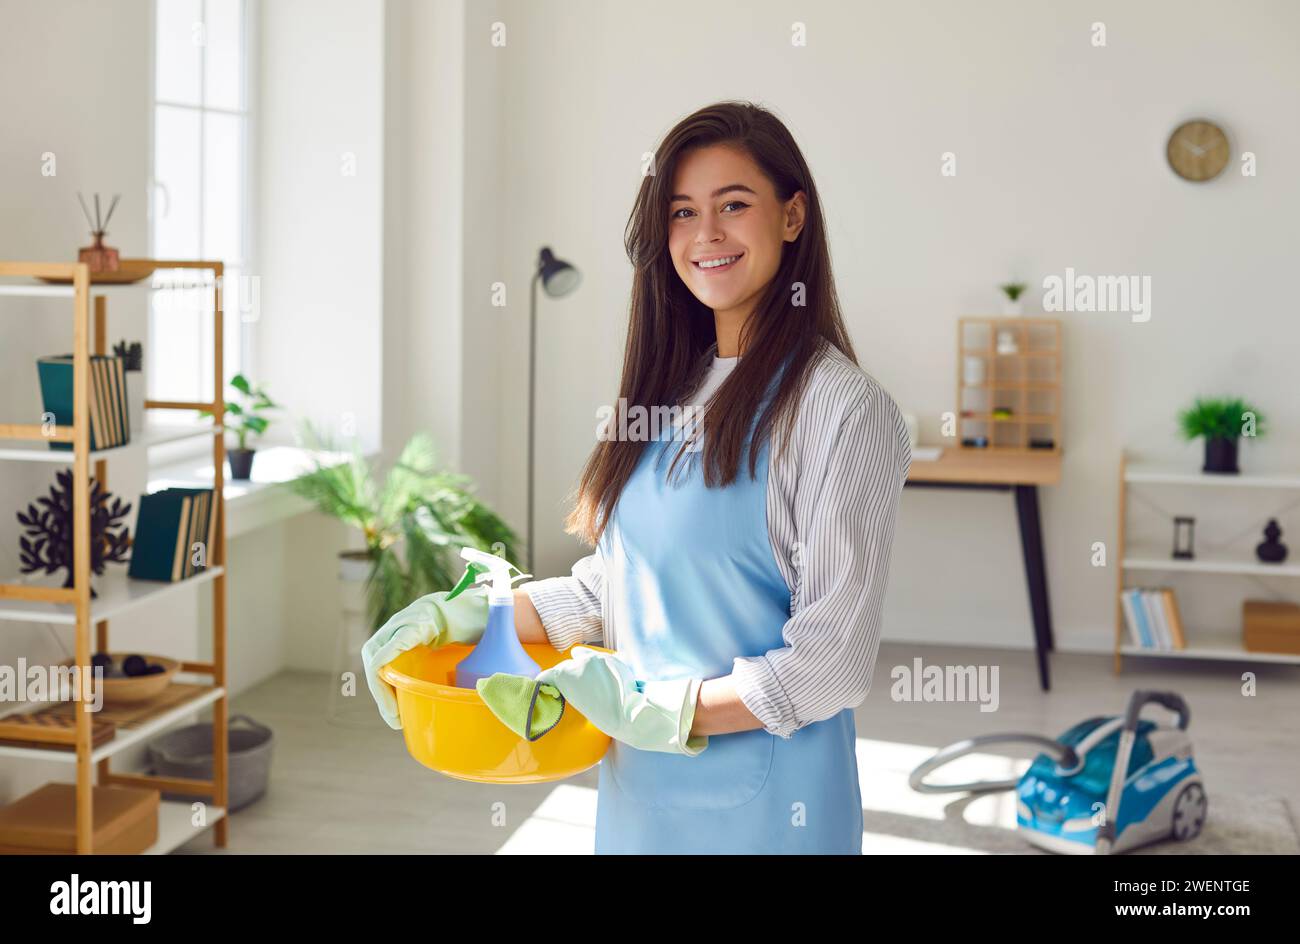 Donna casalinga con attrezzi e stracci per la pulizia, in salotto e guardando la macchina fotografica. Foto Stock